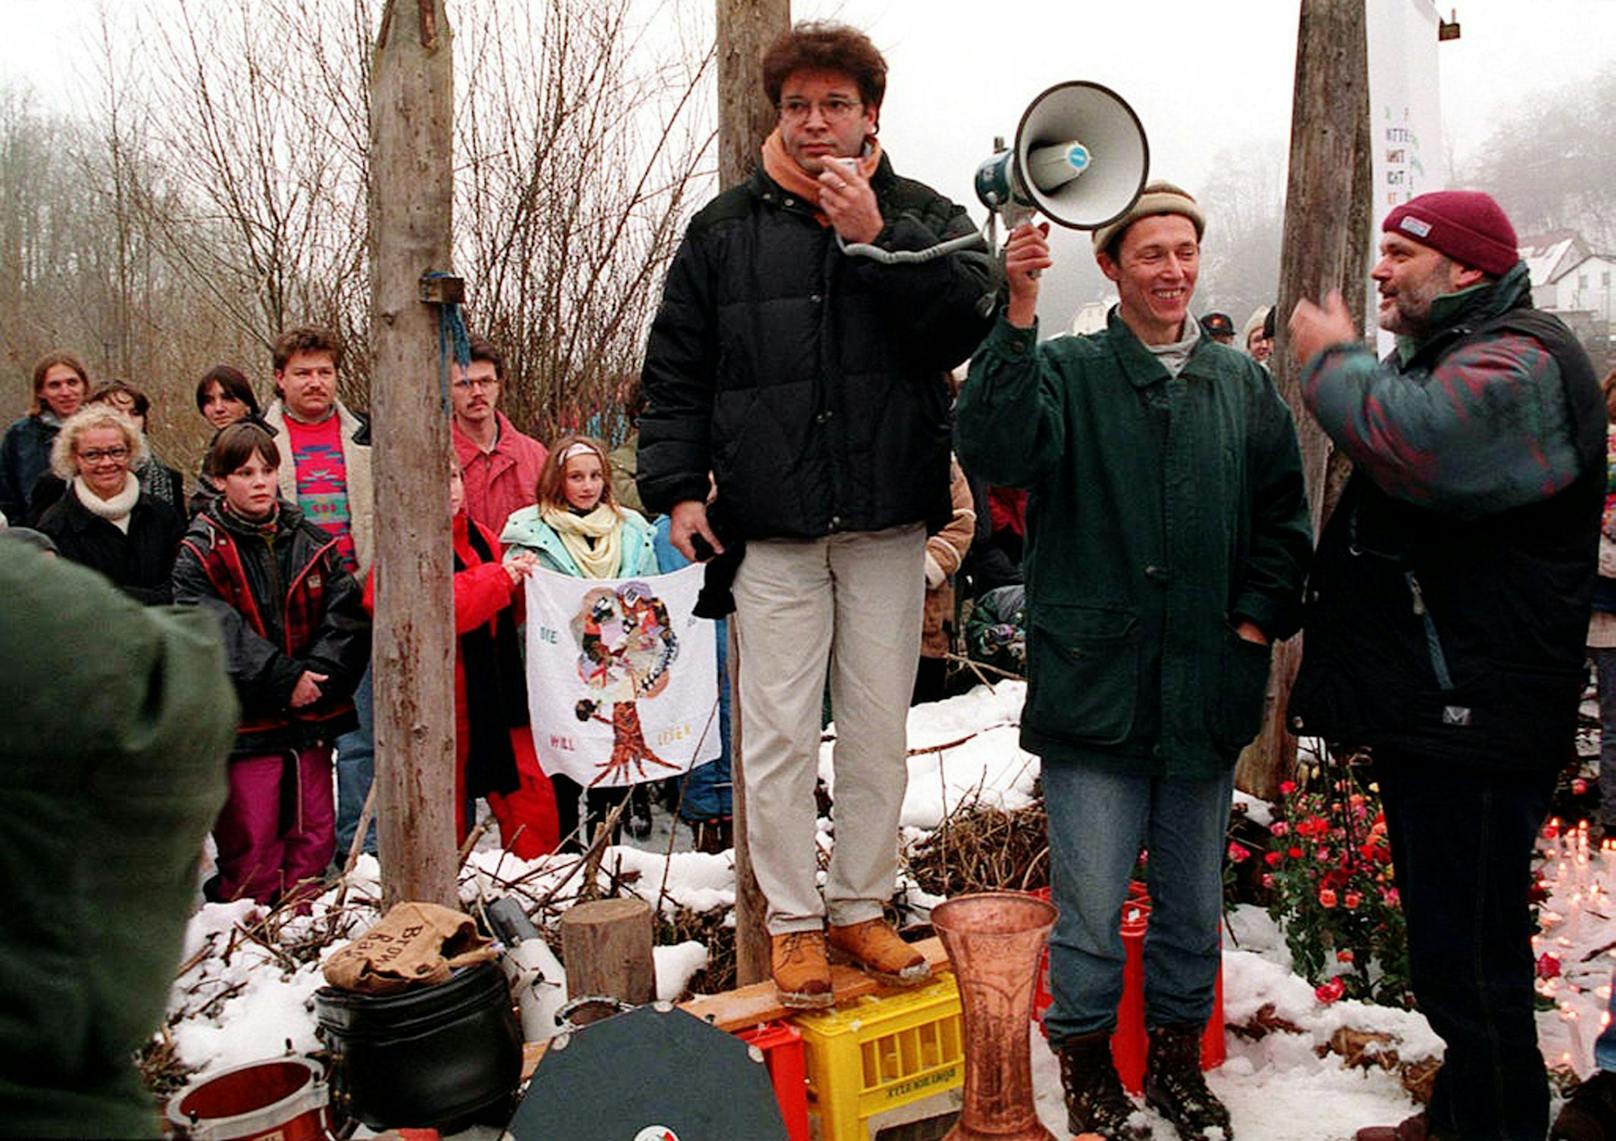 Anschober beteiligte sich auch an Protesten, hier beim Protestcamp der Gegner des Kraftwerkprojekts Lambach in Oberösterreich 1996.